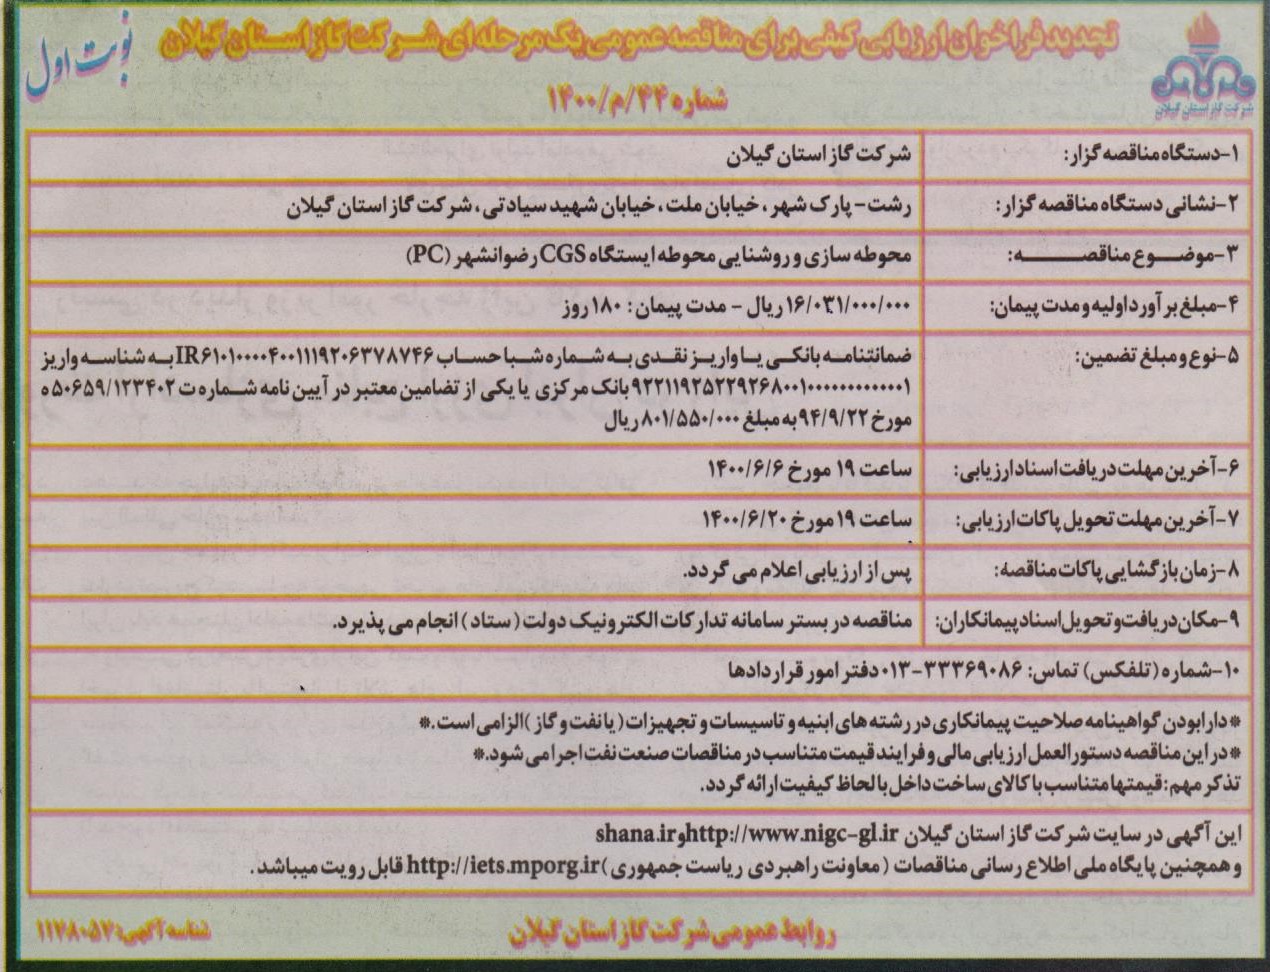 محوطه سازی و روشنایی ایستگاه گاز رضوانشهر - 1 شهریور 1400